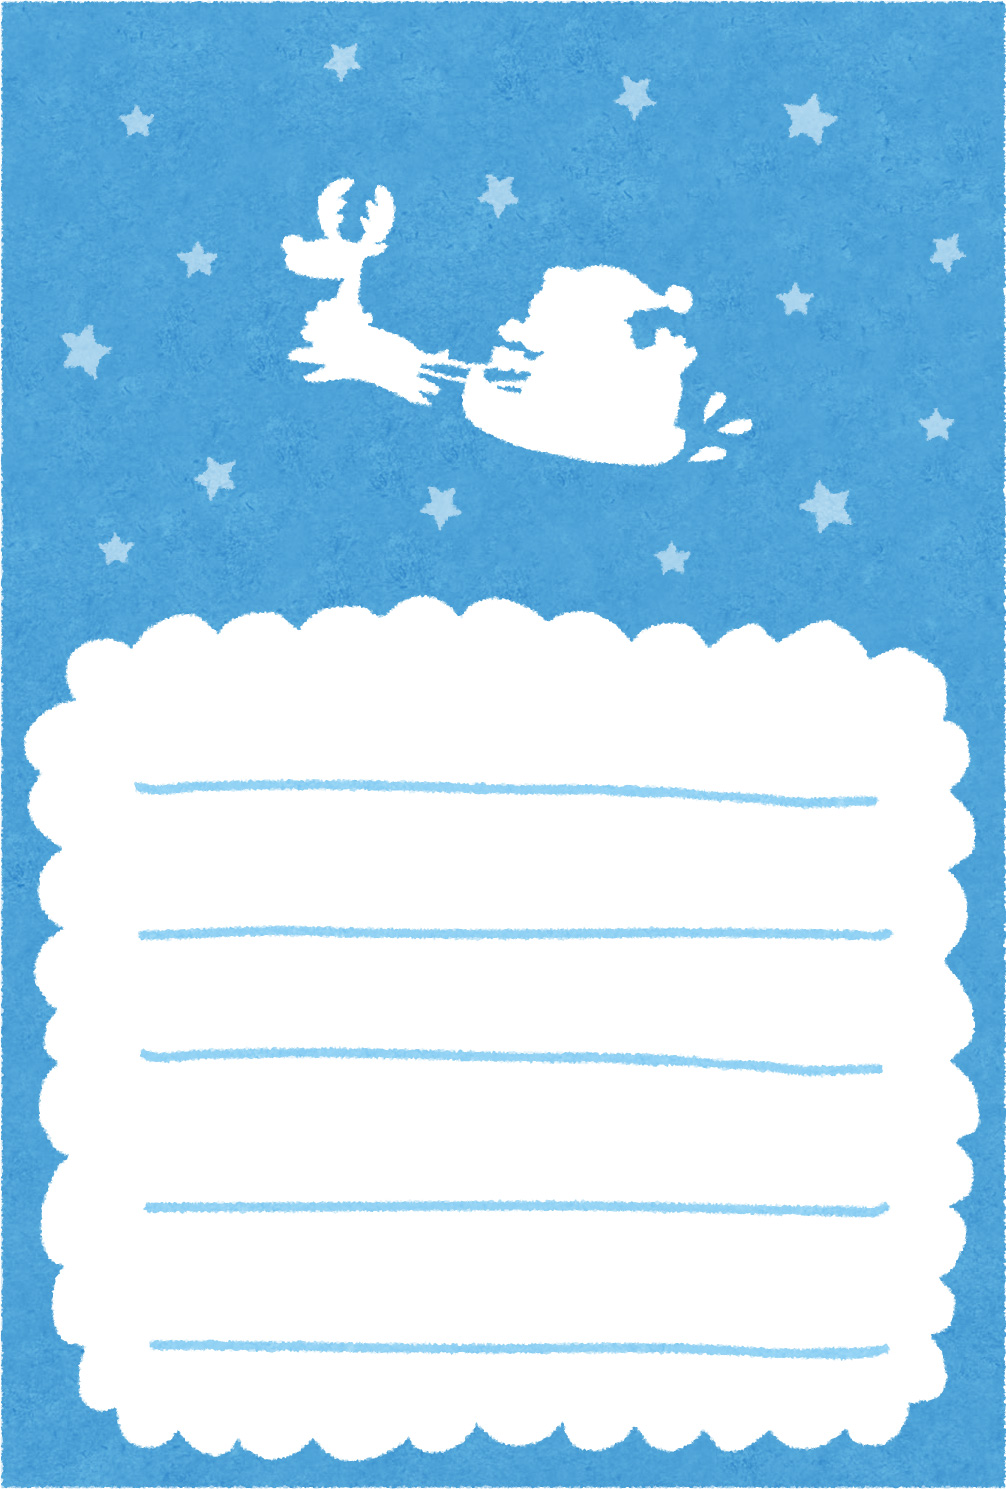 クリスマスカードのテンプレート サンタとトナカイ かわいいフリー素材集 いらすとや